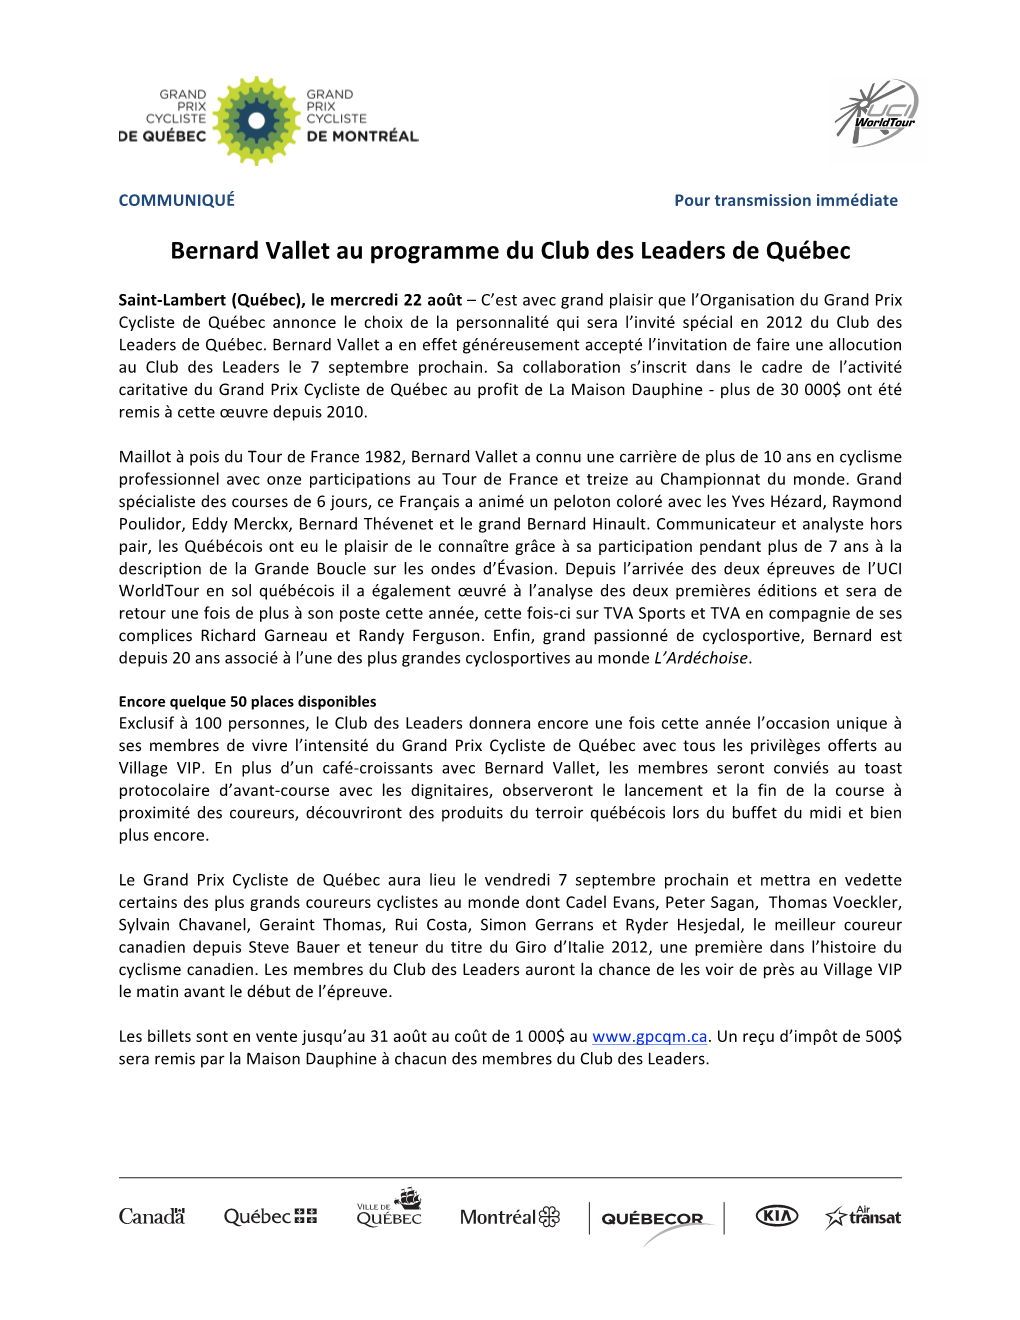 Bernard Vallet Au Programme Du Club Des Leaders De Québec